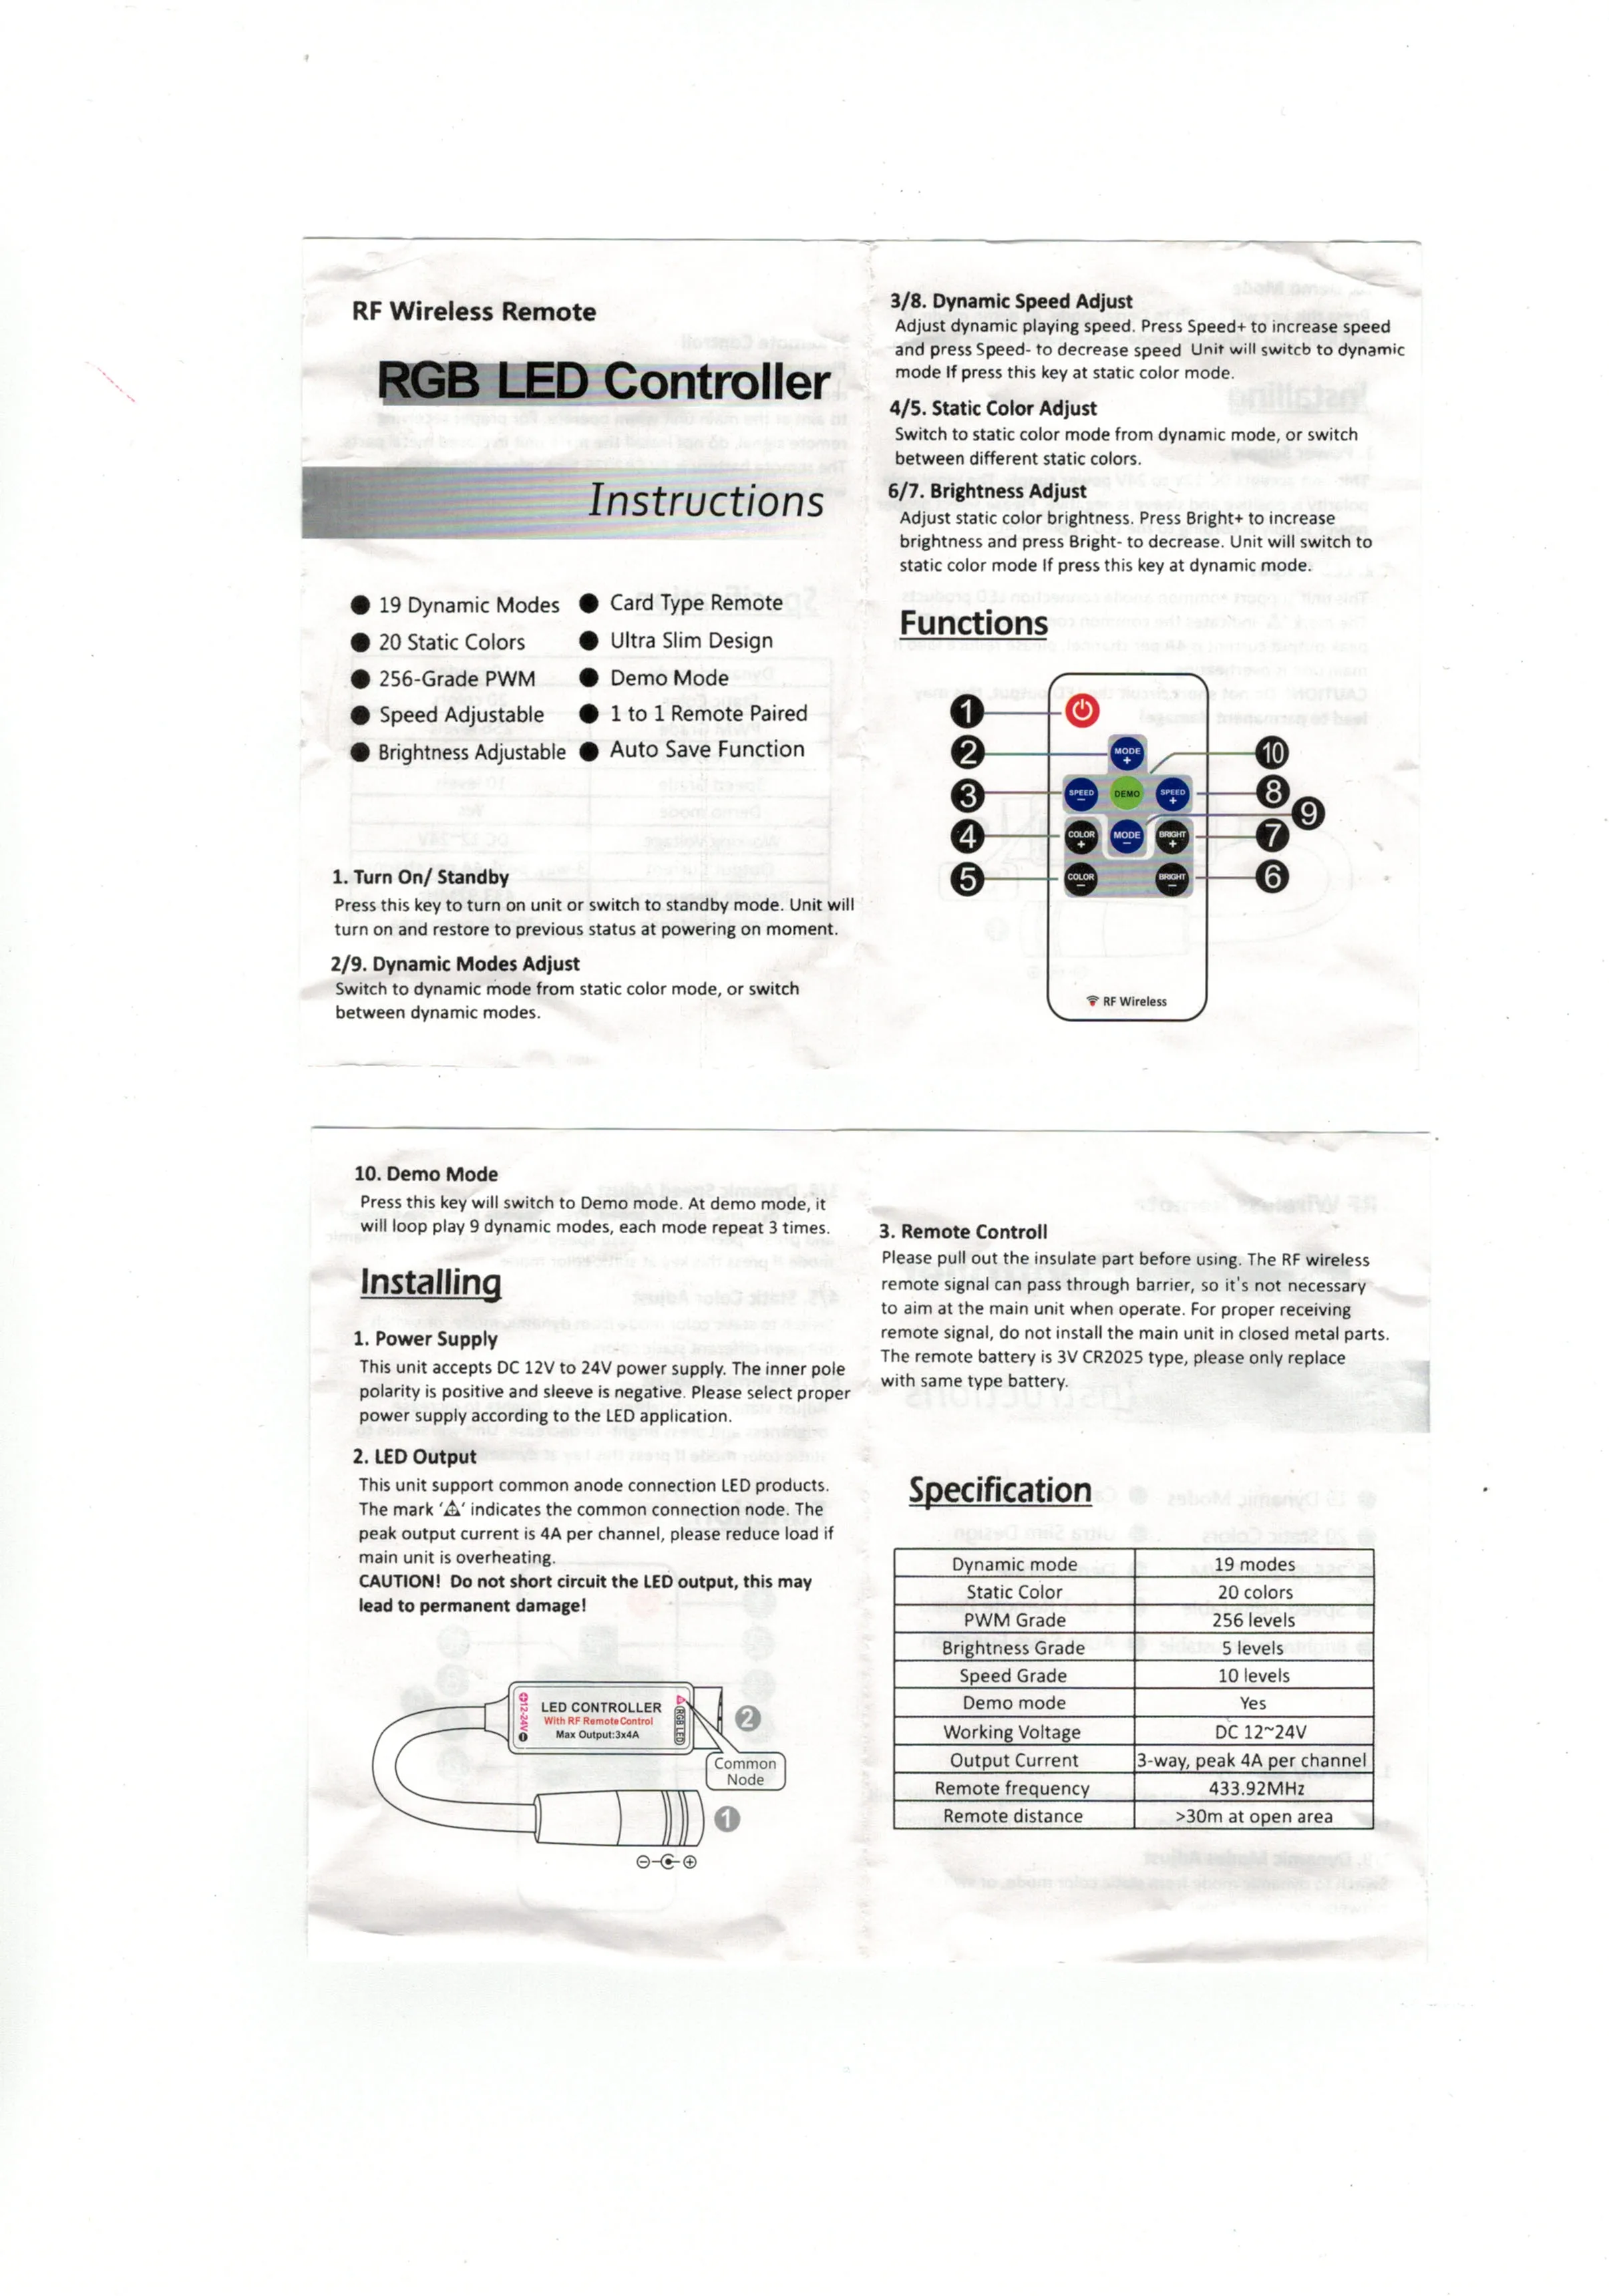 Rs-a0049 Jim Beam Pivo LED Neon Kolo Známky 25 cm/ 10 cm - Bar Podpísať s RGB Multi-Farebné Diaľkové Bezdrôtové Ovládanie Funkcia